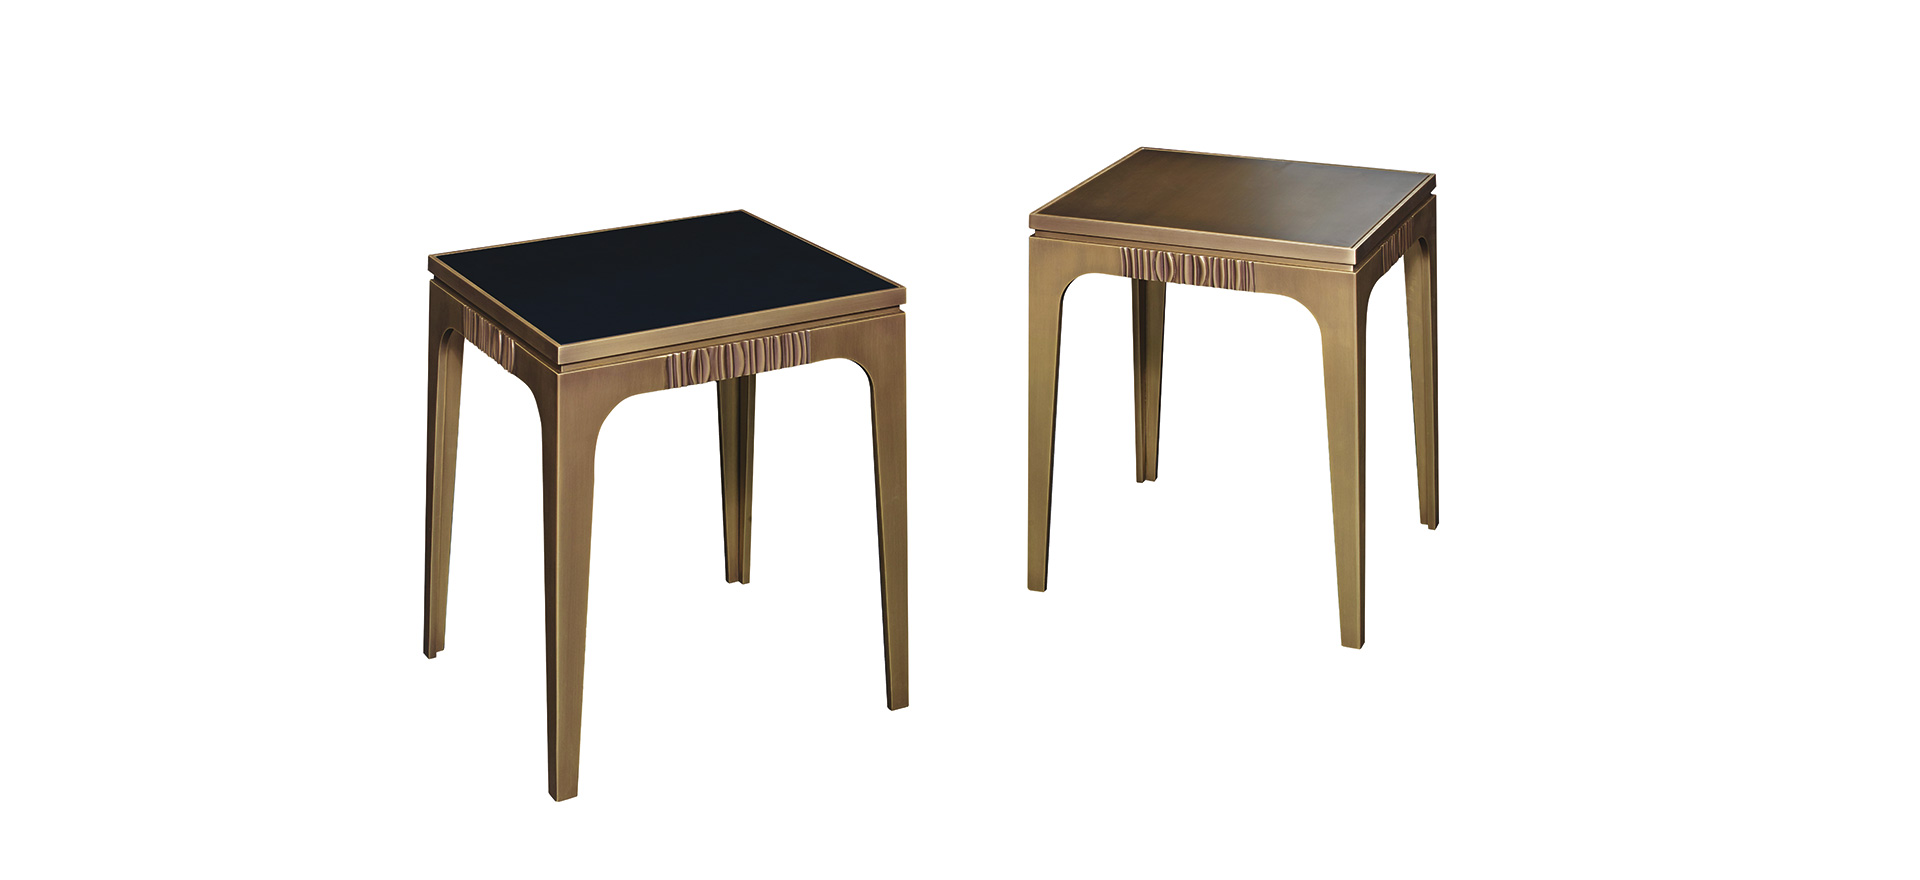 Lowndes est une table volante en bronze avec finitions en bronze. Ce meuble fait partie de la collection « The London Collection » de Promemoria | Promemoria